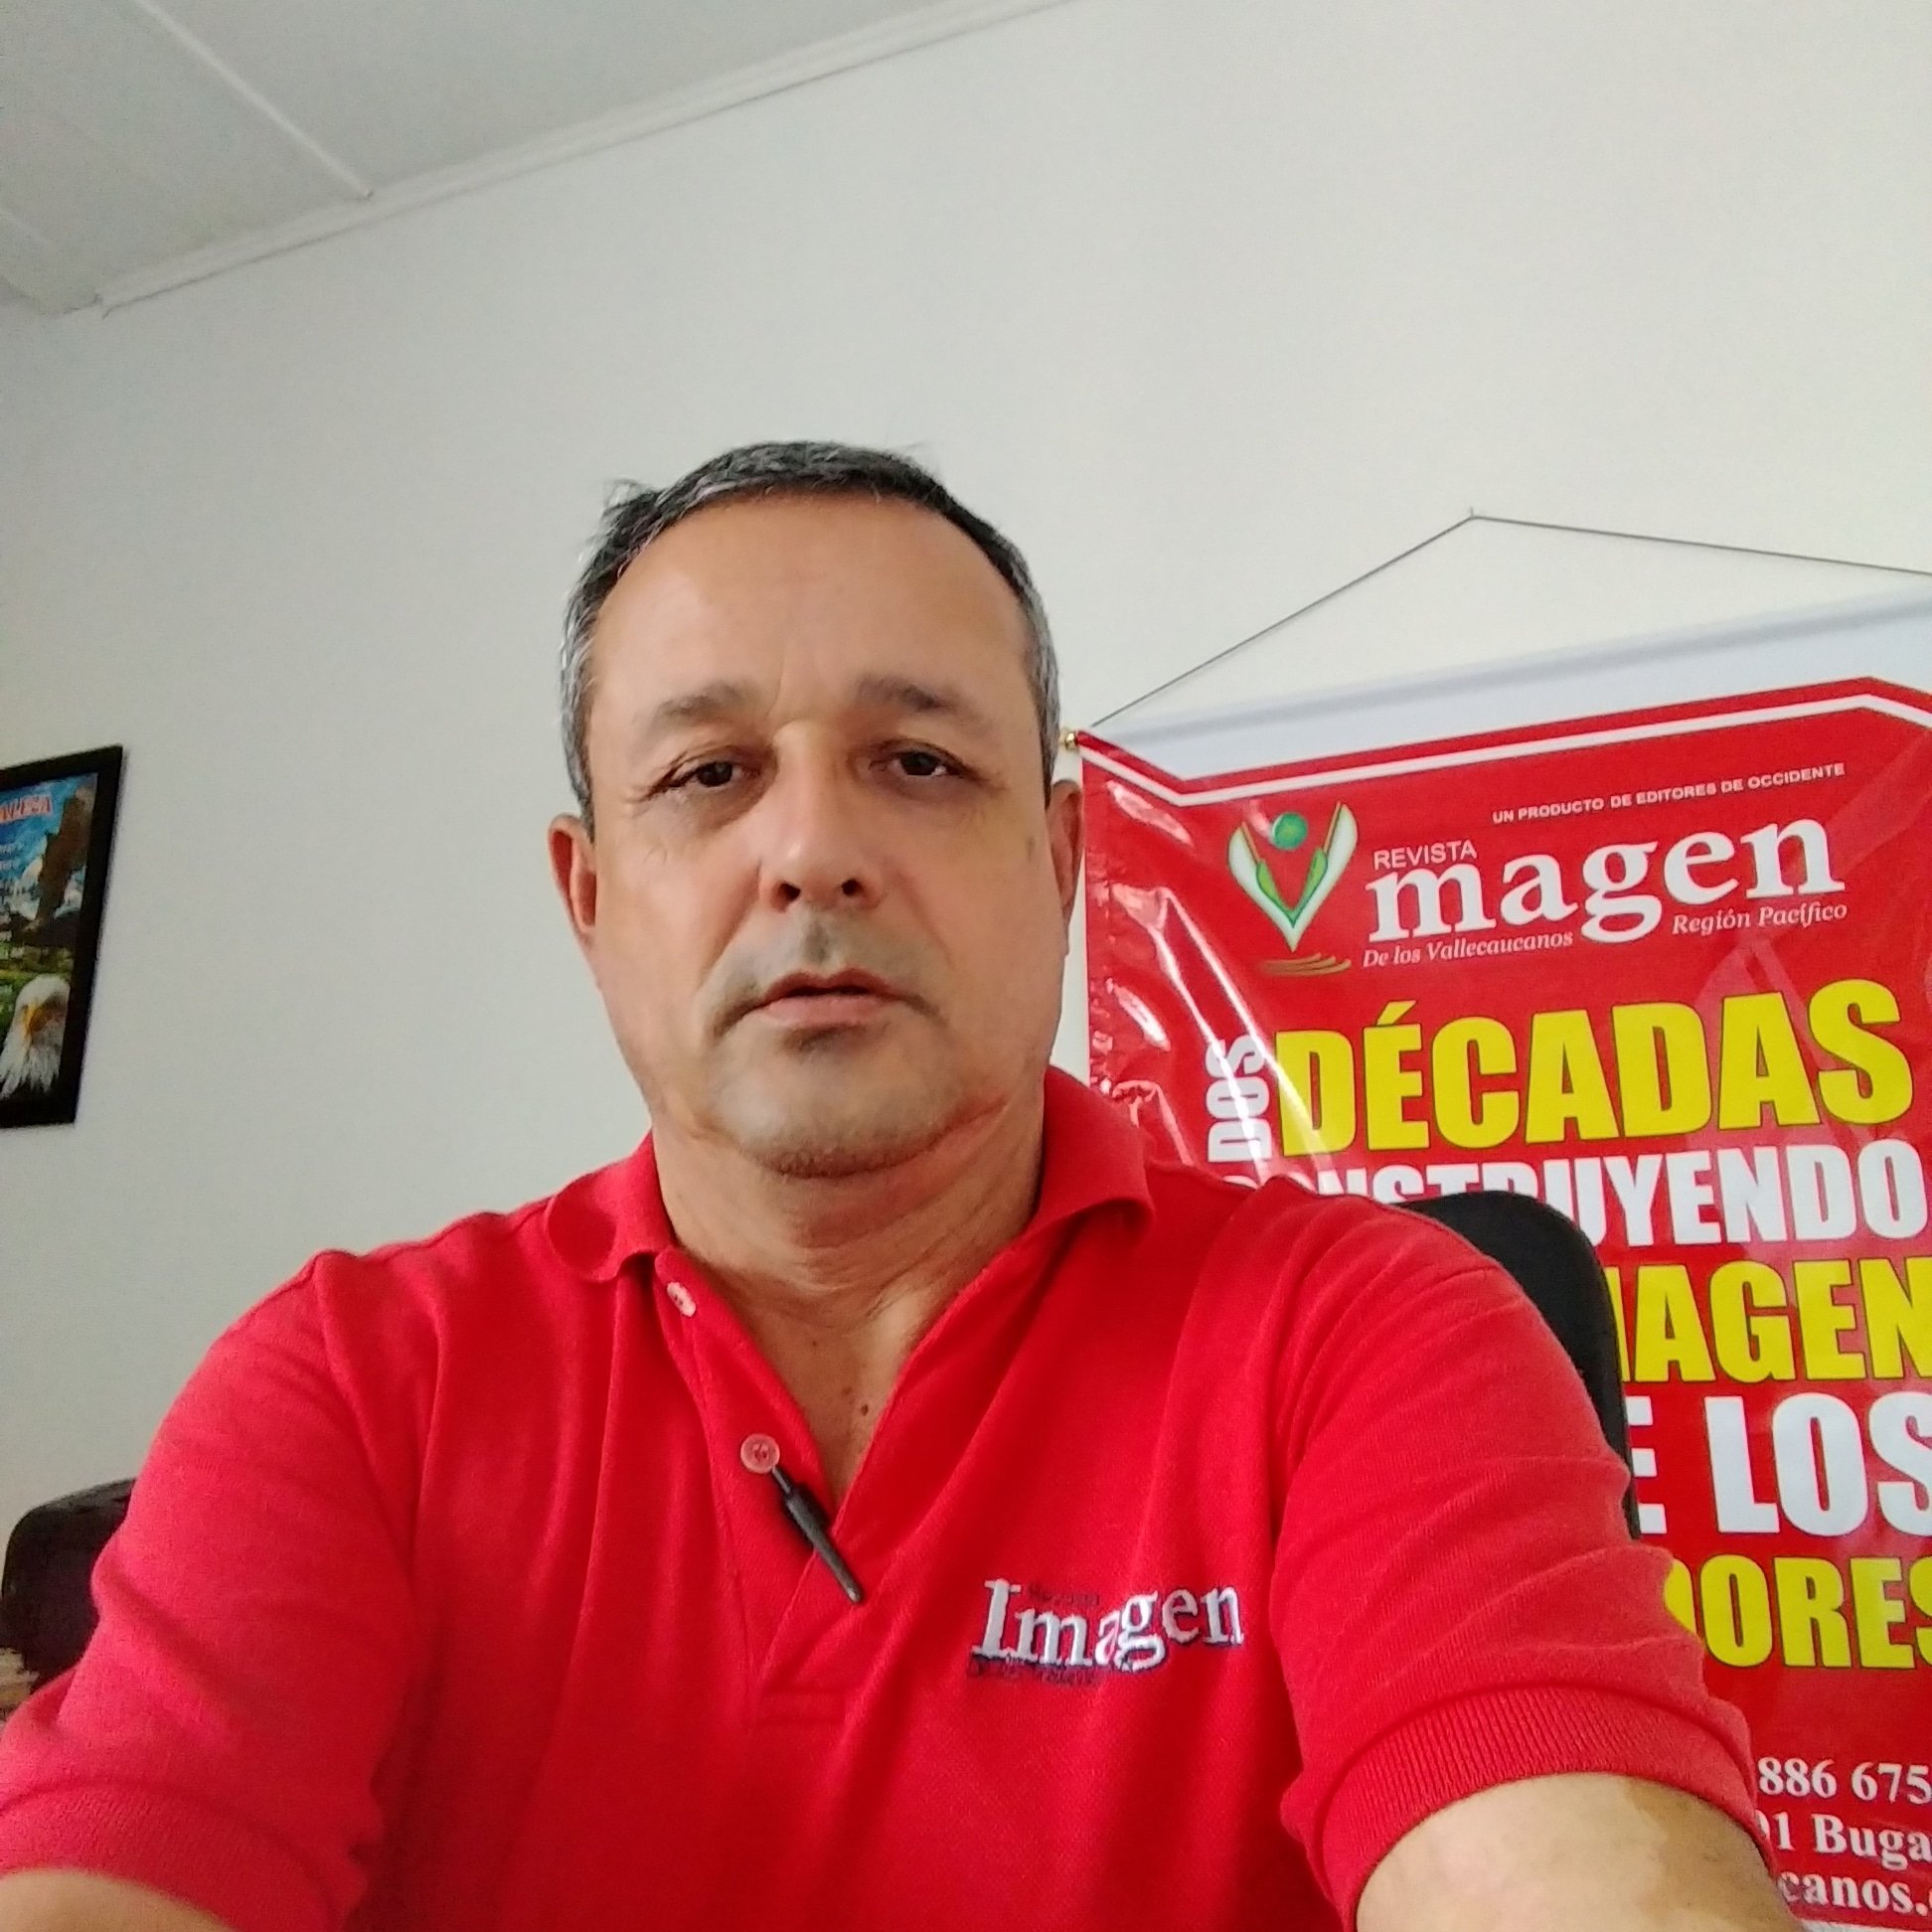 Periodista de la revista imagen del valle,
Empresario de comunicaciones,
Estratega en imagen
Política empresarial, local guides Colombia de Google.